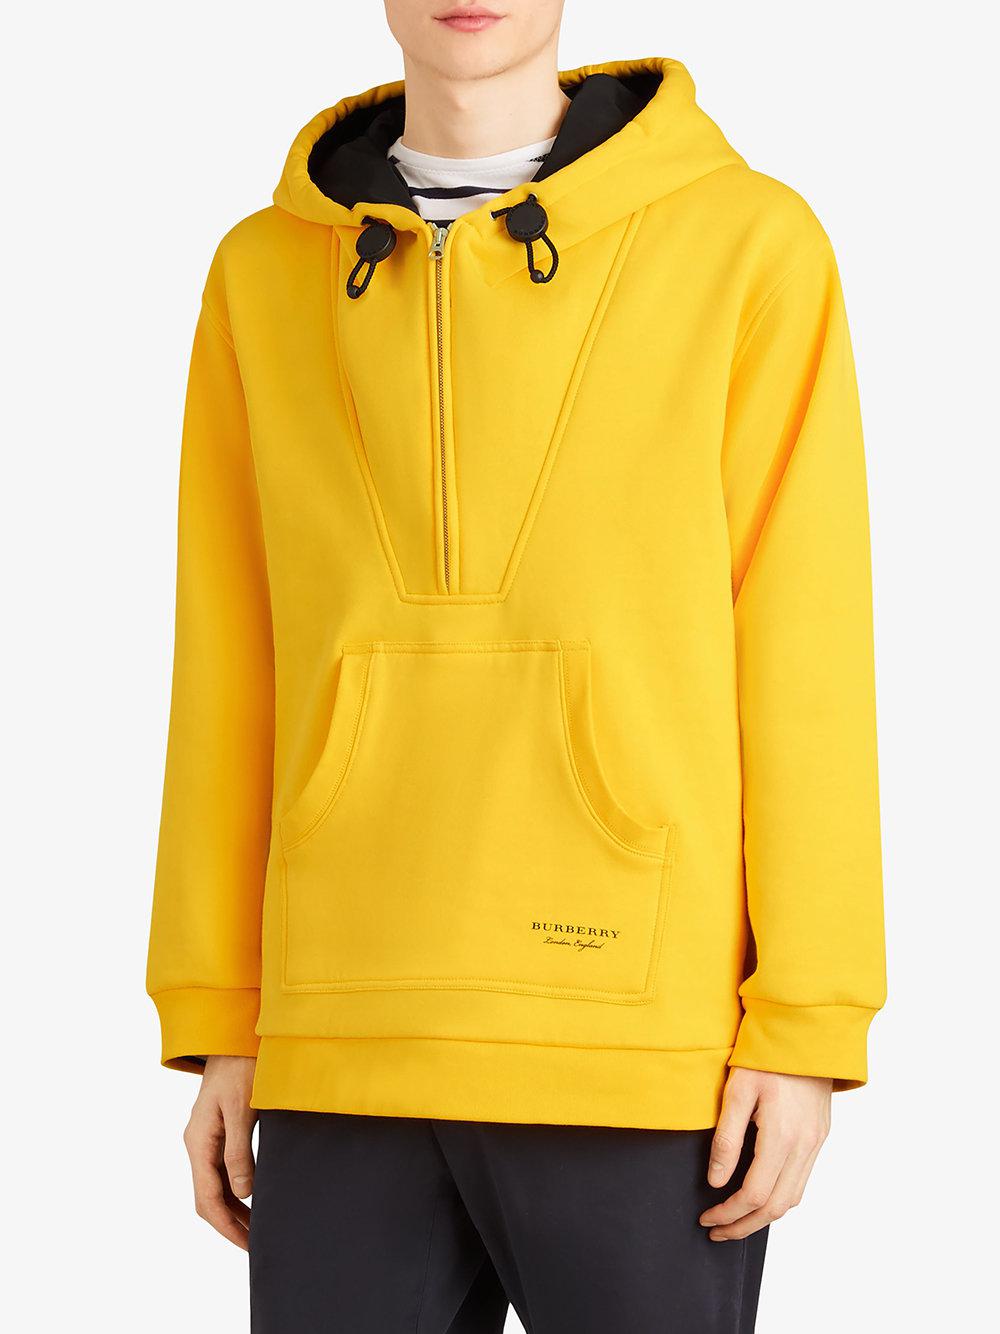 Burberry Oversized Sweatshirt Half-zip Hoodie in Yellow for Men - Lyst